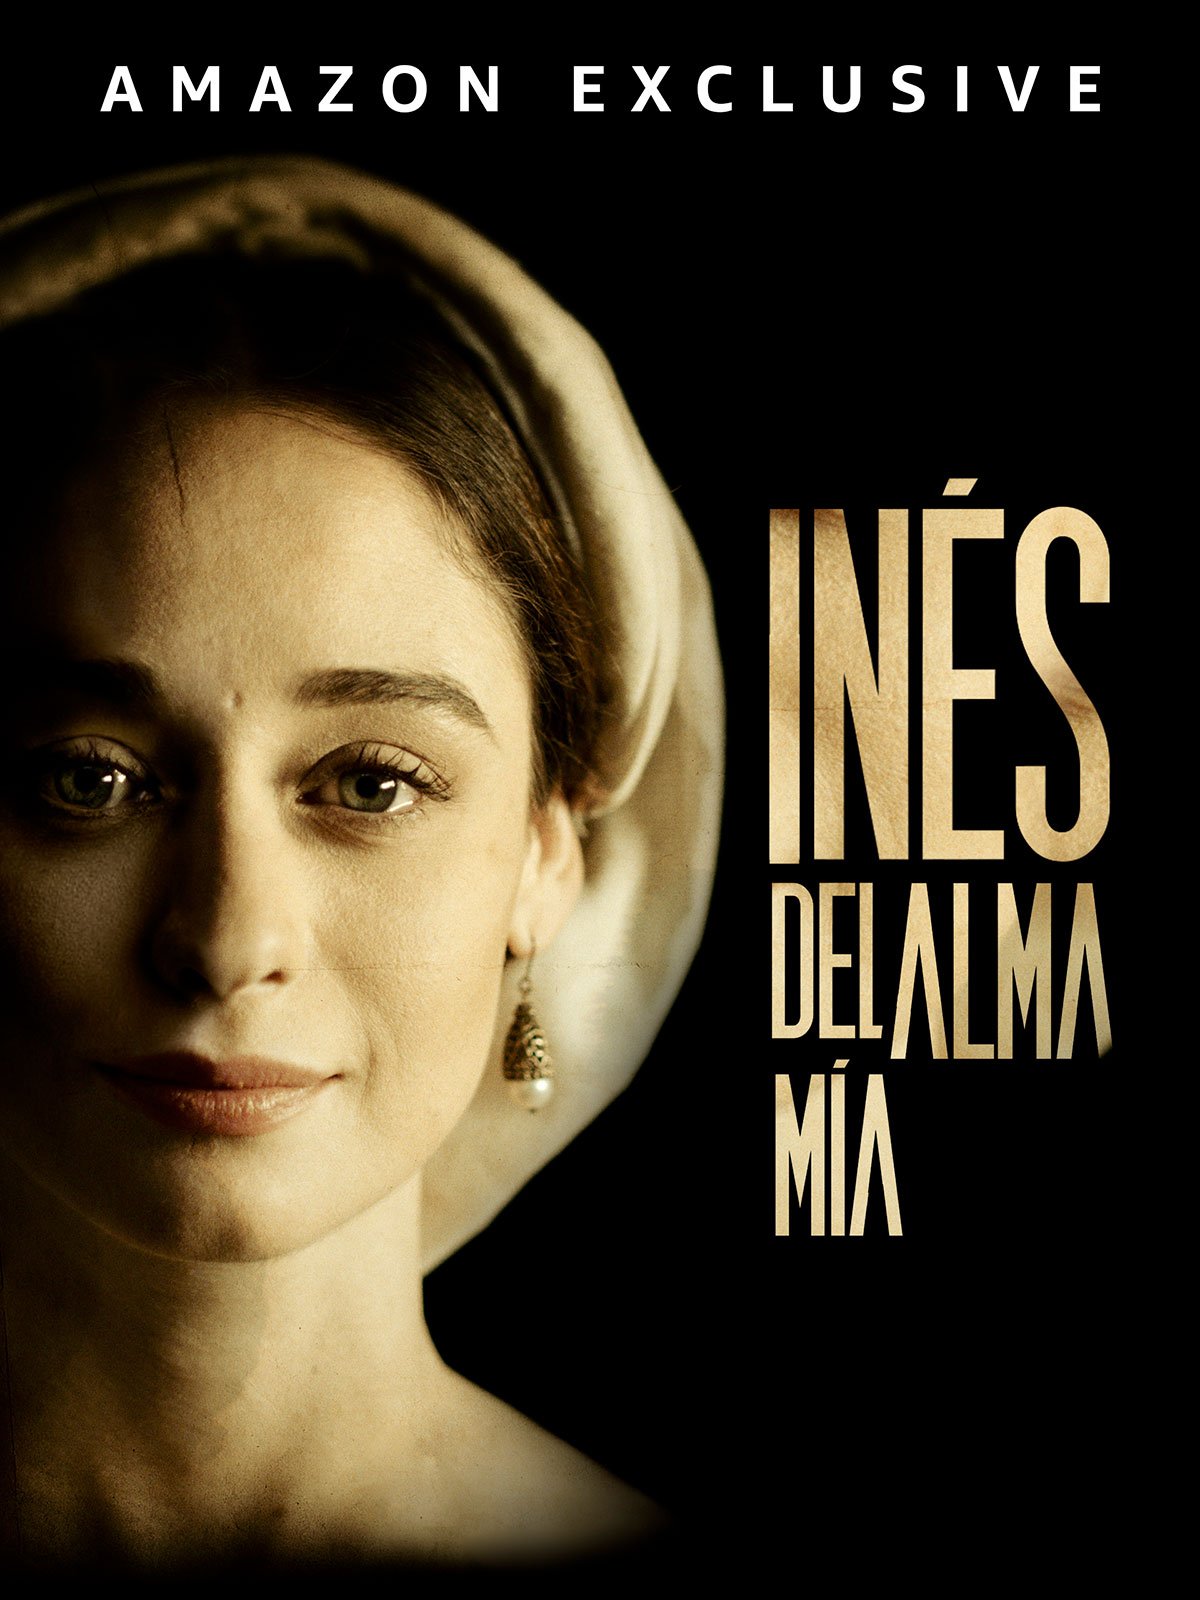 [心得] 我靈魂中的伊內絲 Inés del alma mía (雷) 西班牙&智利